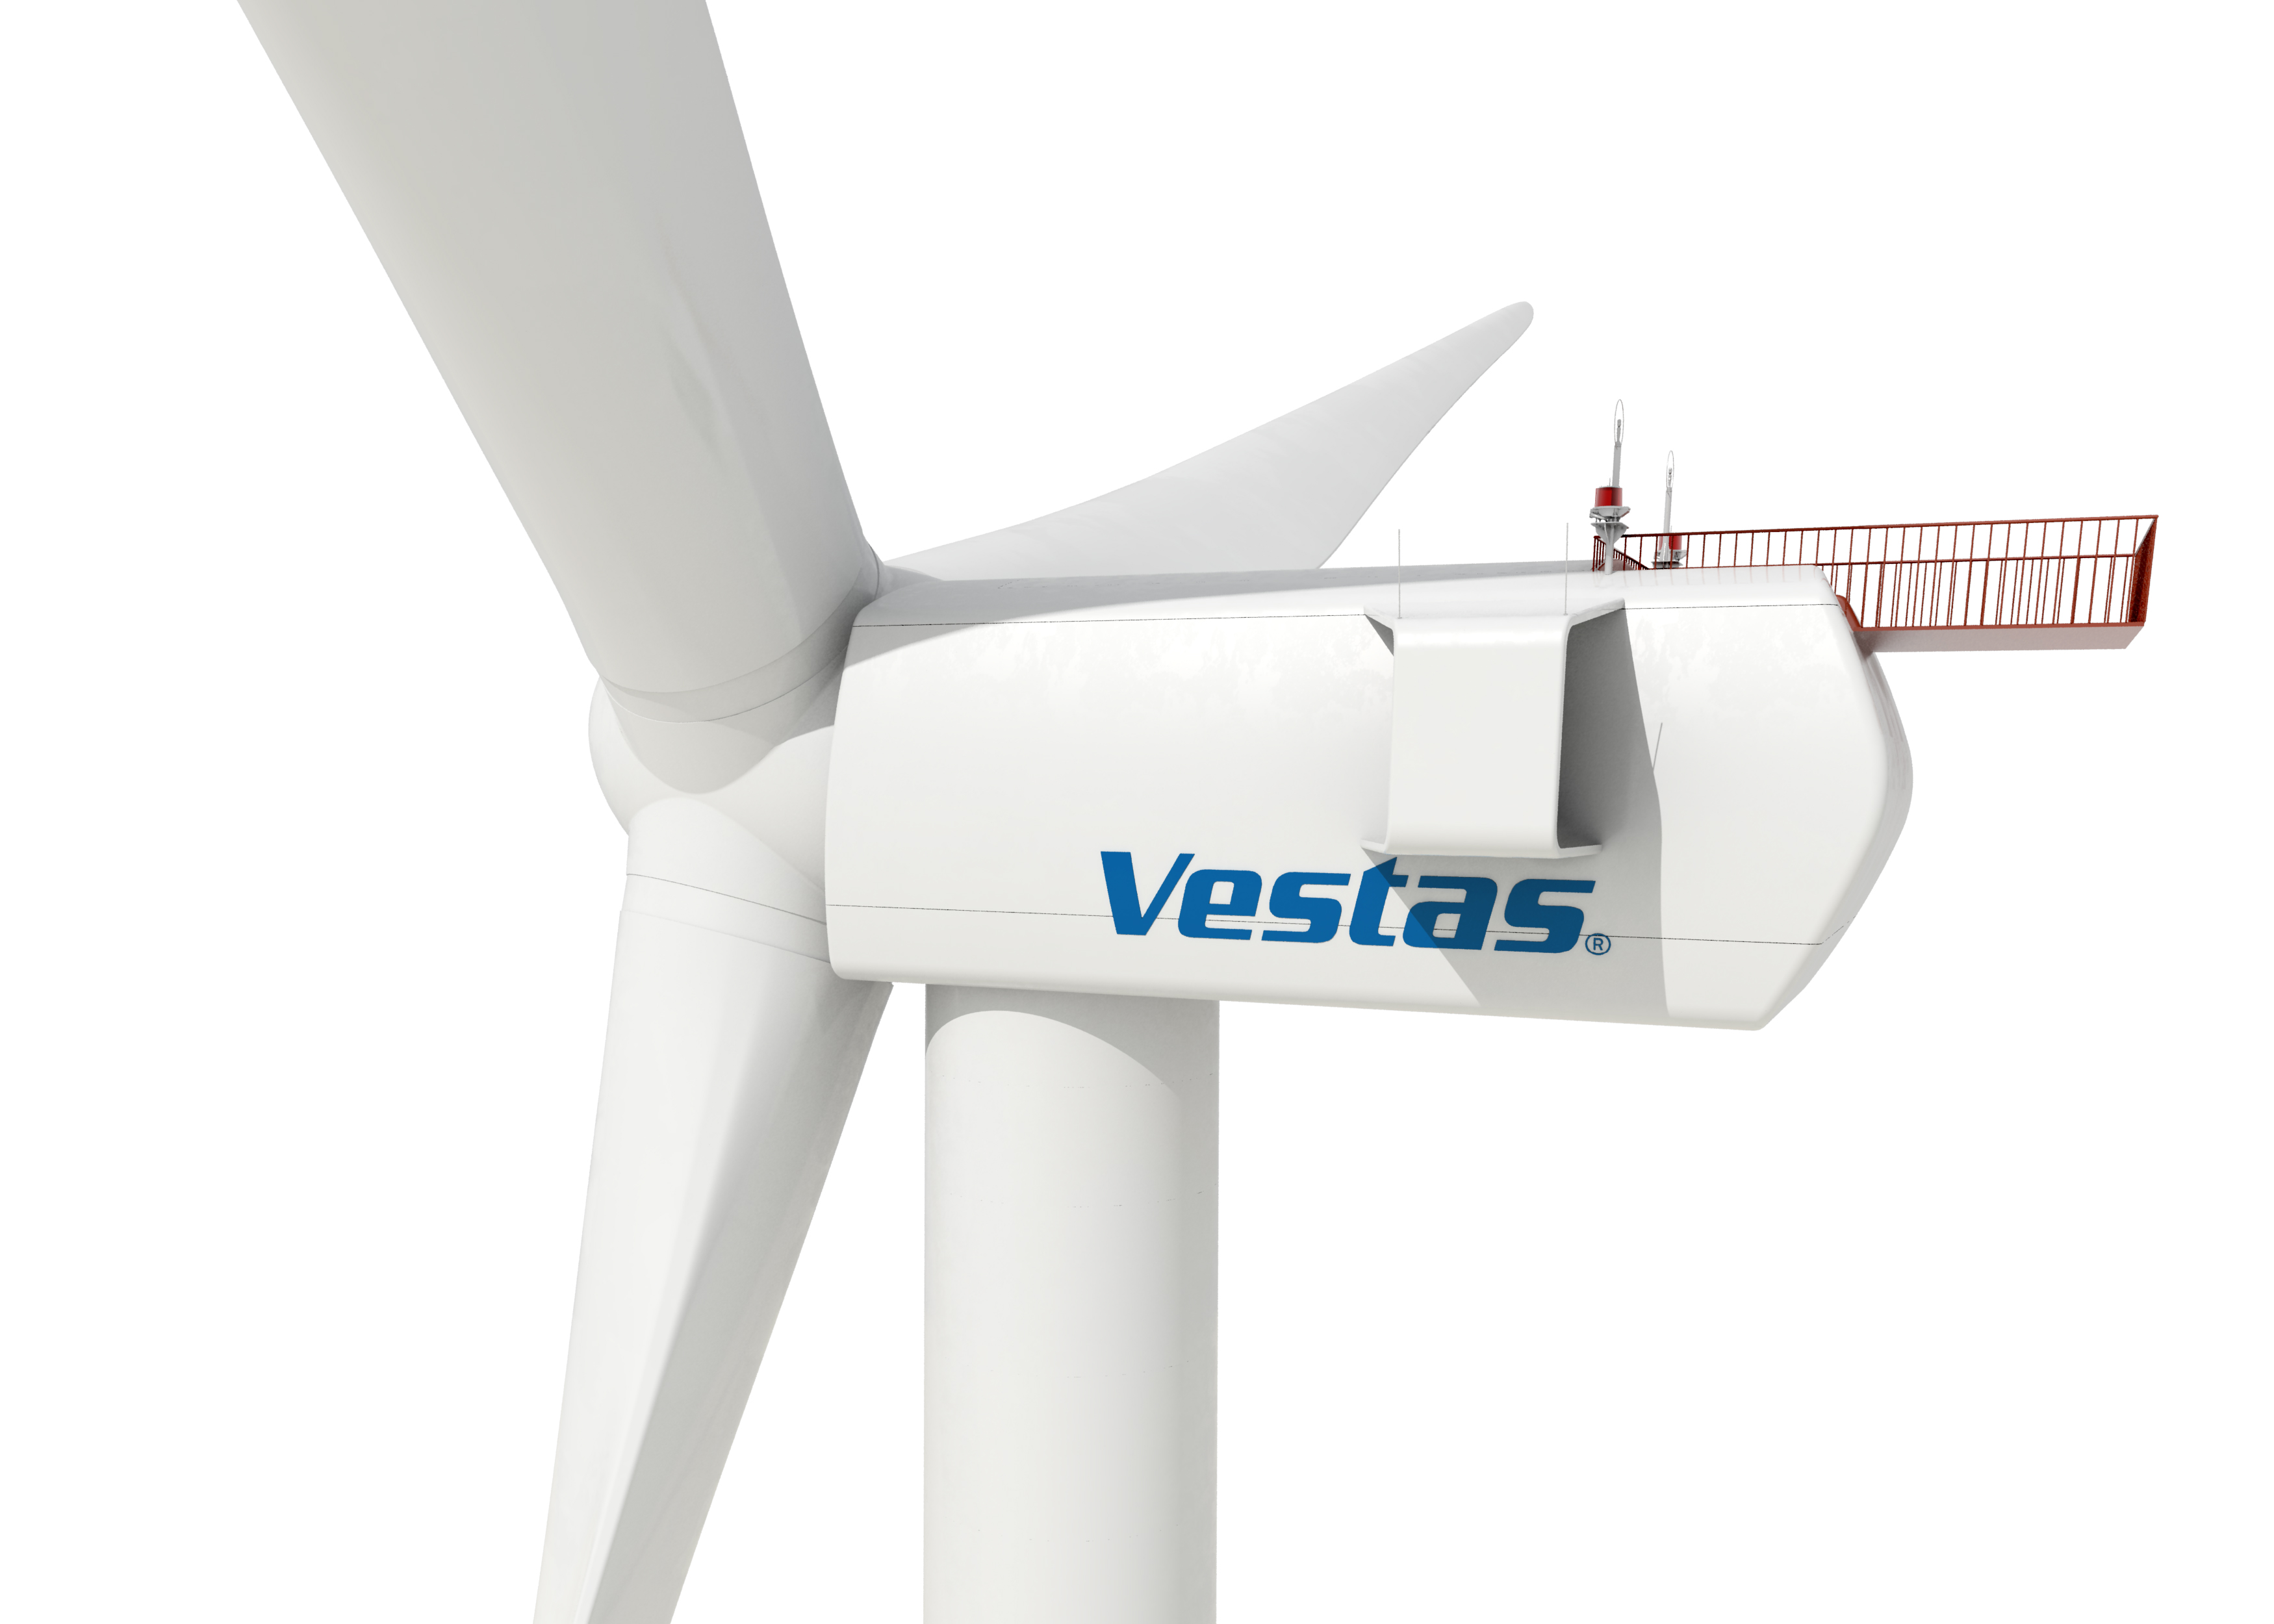 La eólica Vestas producirá 600 aerogeneradores anuales en León